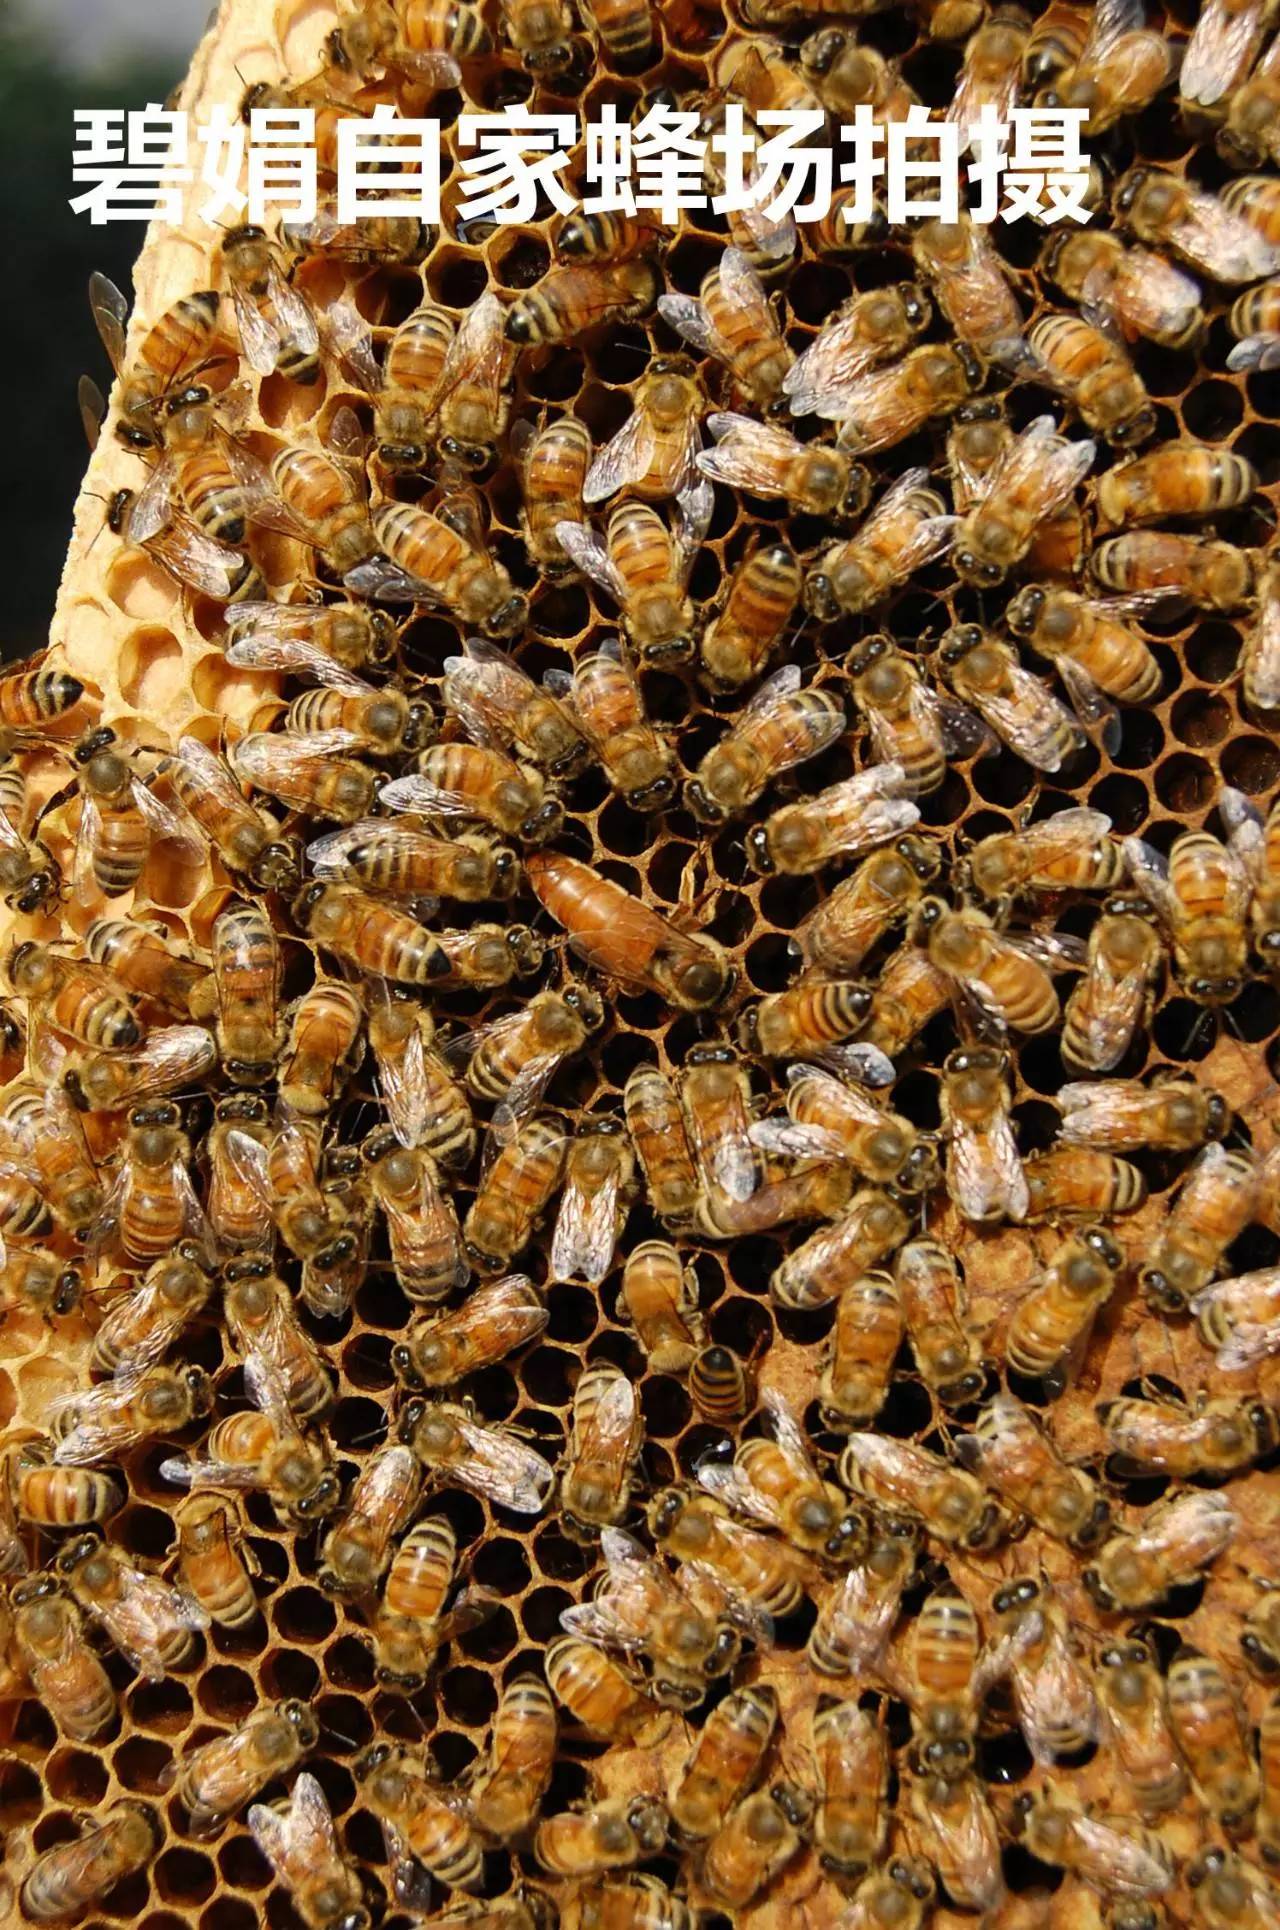 绿茶粉蜂蜜 蜂蜜可以和生姜一起喝吗 新西兰麦卢卡蜂蜜20 米醋蜂蜜减肥法 蜂蜜疗效